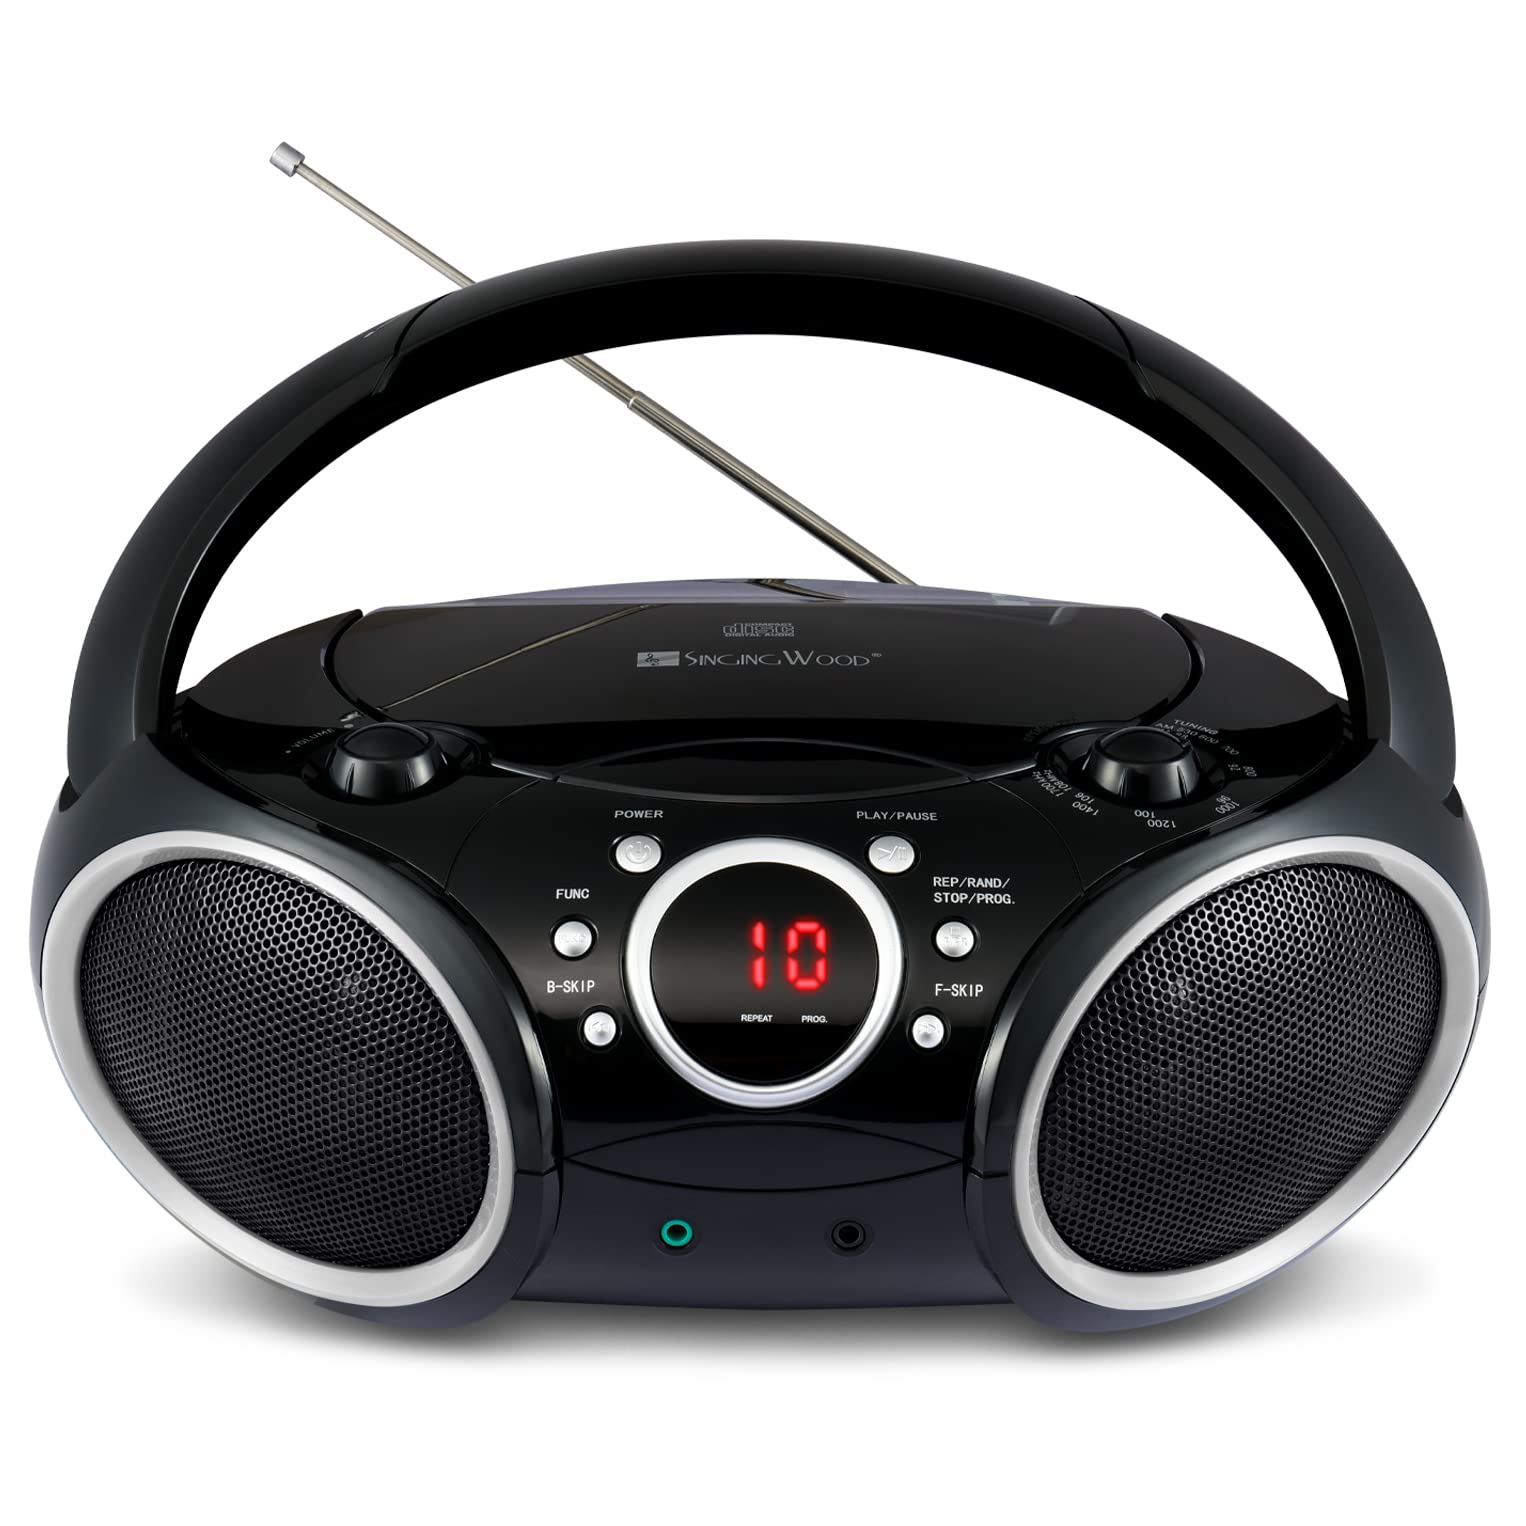 SINGING WOOD 030C tragbarer CD-Player Boombox AM FM analoges Tuning-Radio, AUX-Eingang, Kopfhöreranschluss, klappbarer Tragegriff (schwarz mit einem Hauch von grauen Rändern)